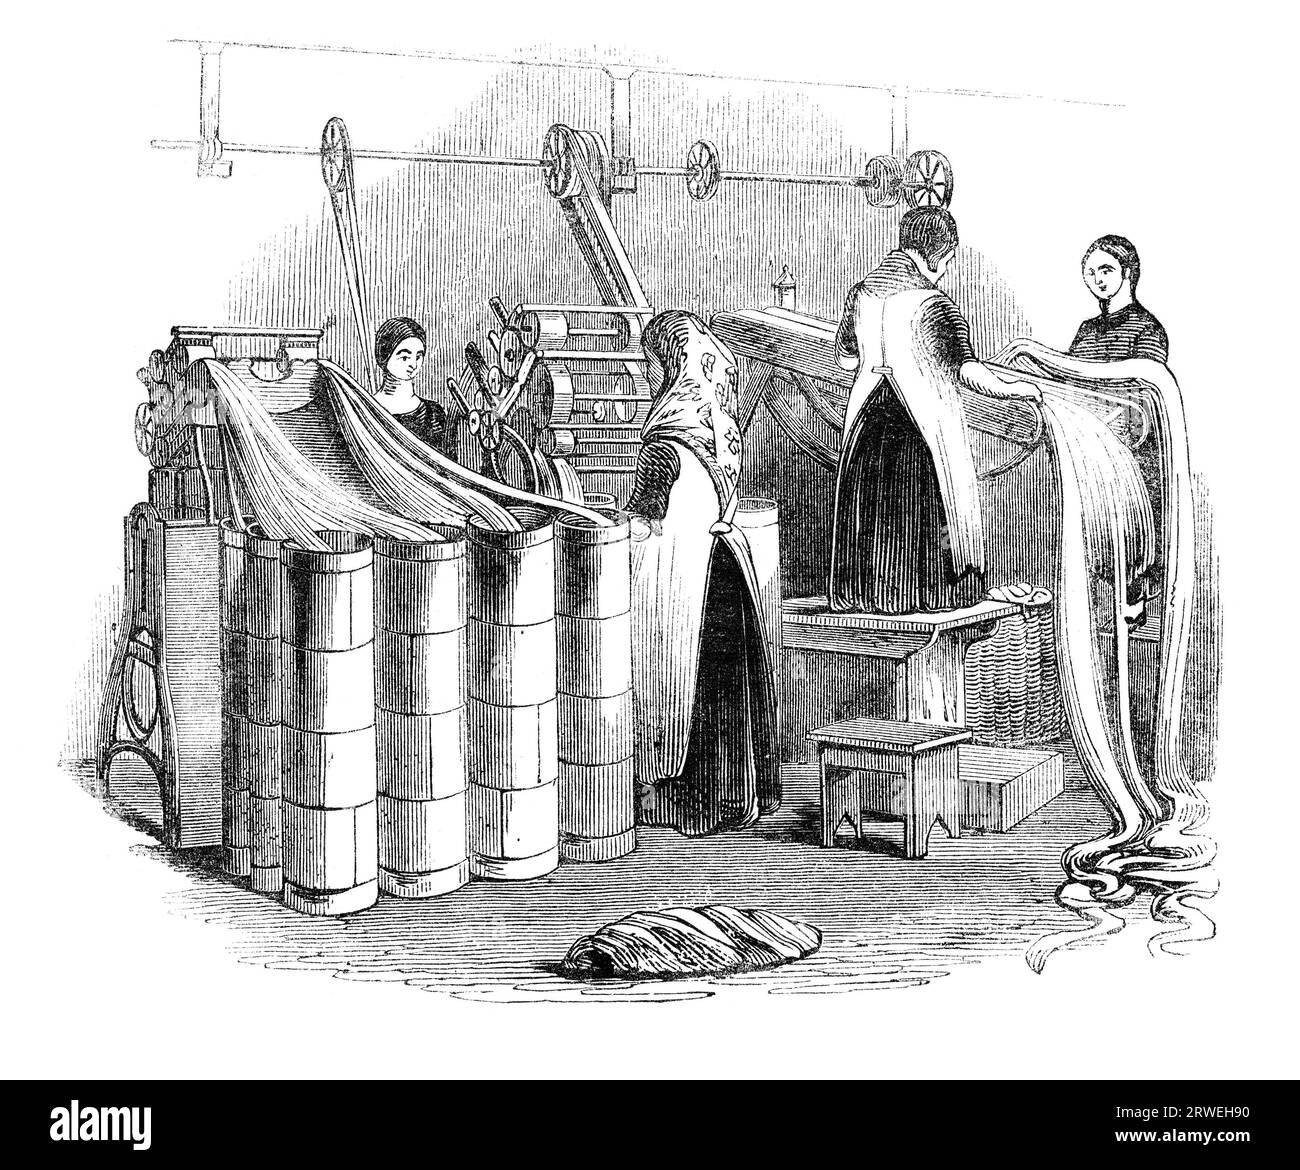 Une journée aux Yorkshire Worsted-Factories : dessiner le Worsted en diapositives. Illustration d'un magazine anglais imprimé en 1844 Banque D'Images